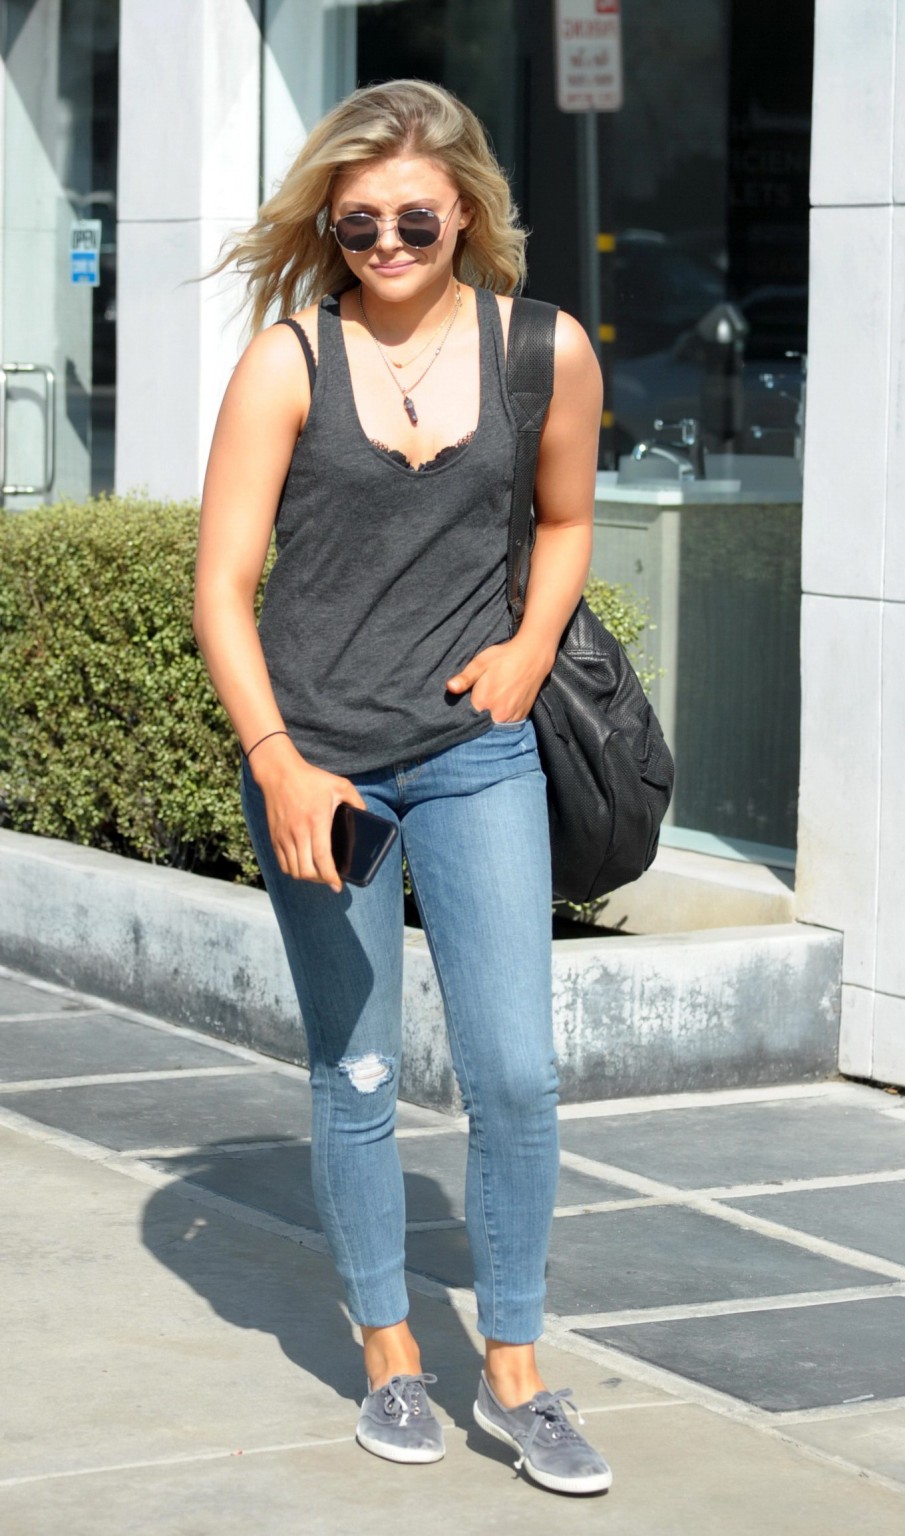 Chloe Moretz bra peek out in West Hollywood #75173452